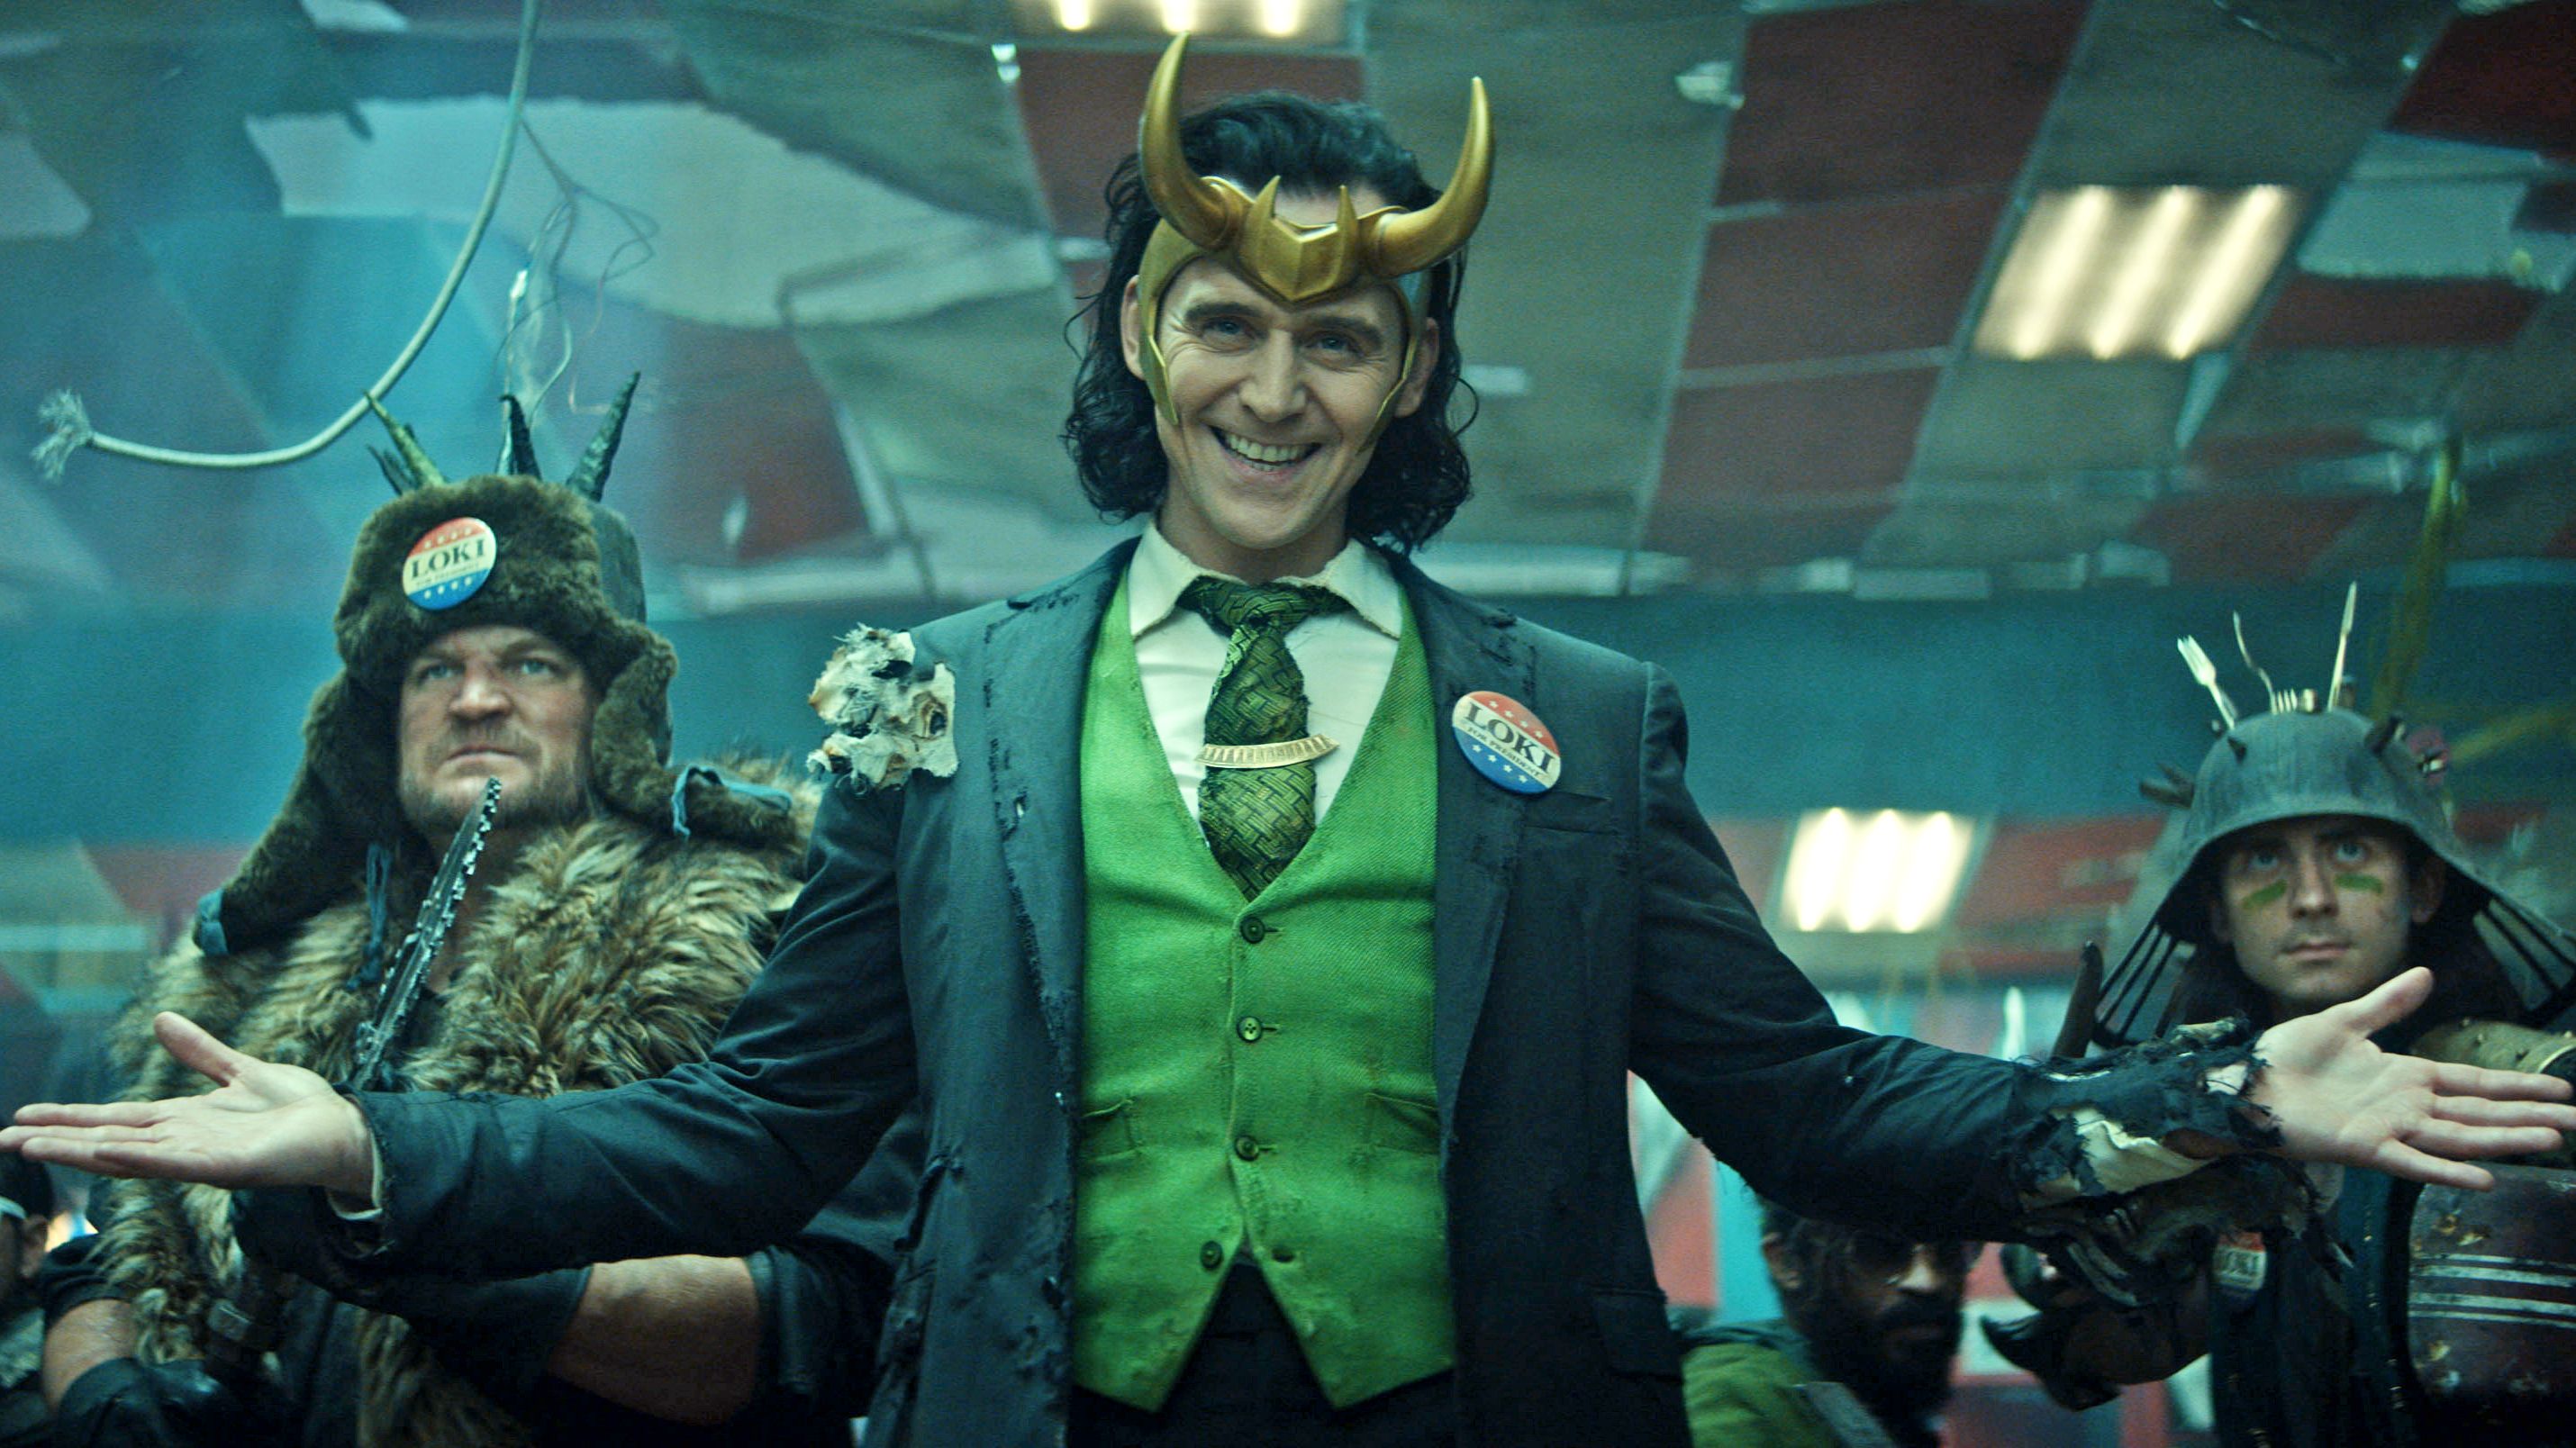 Marvel Loki Episode 6